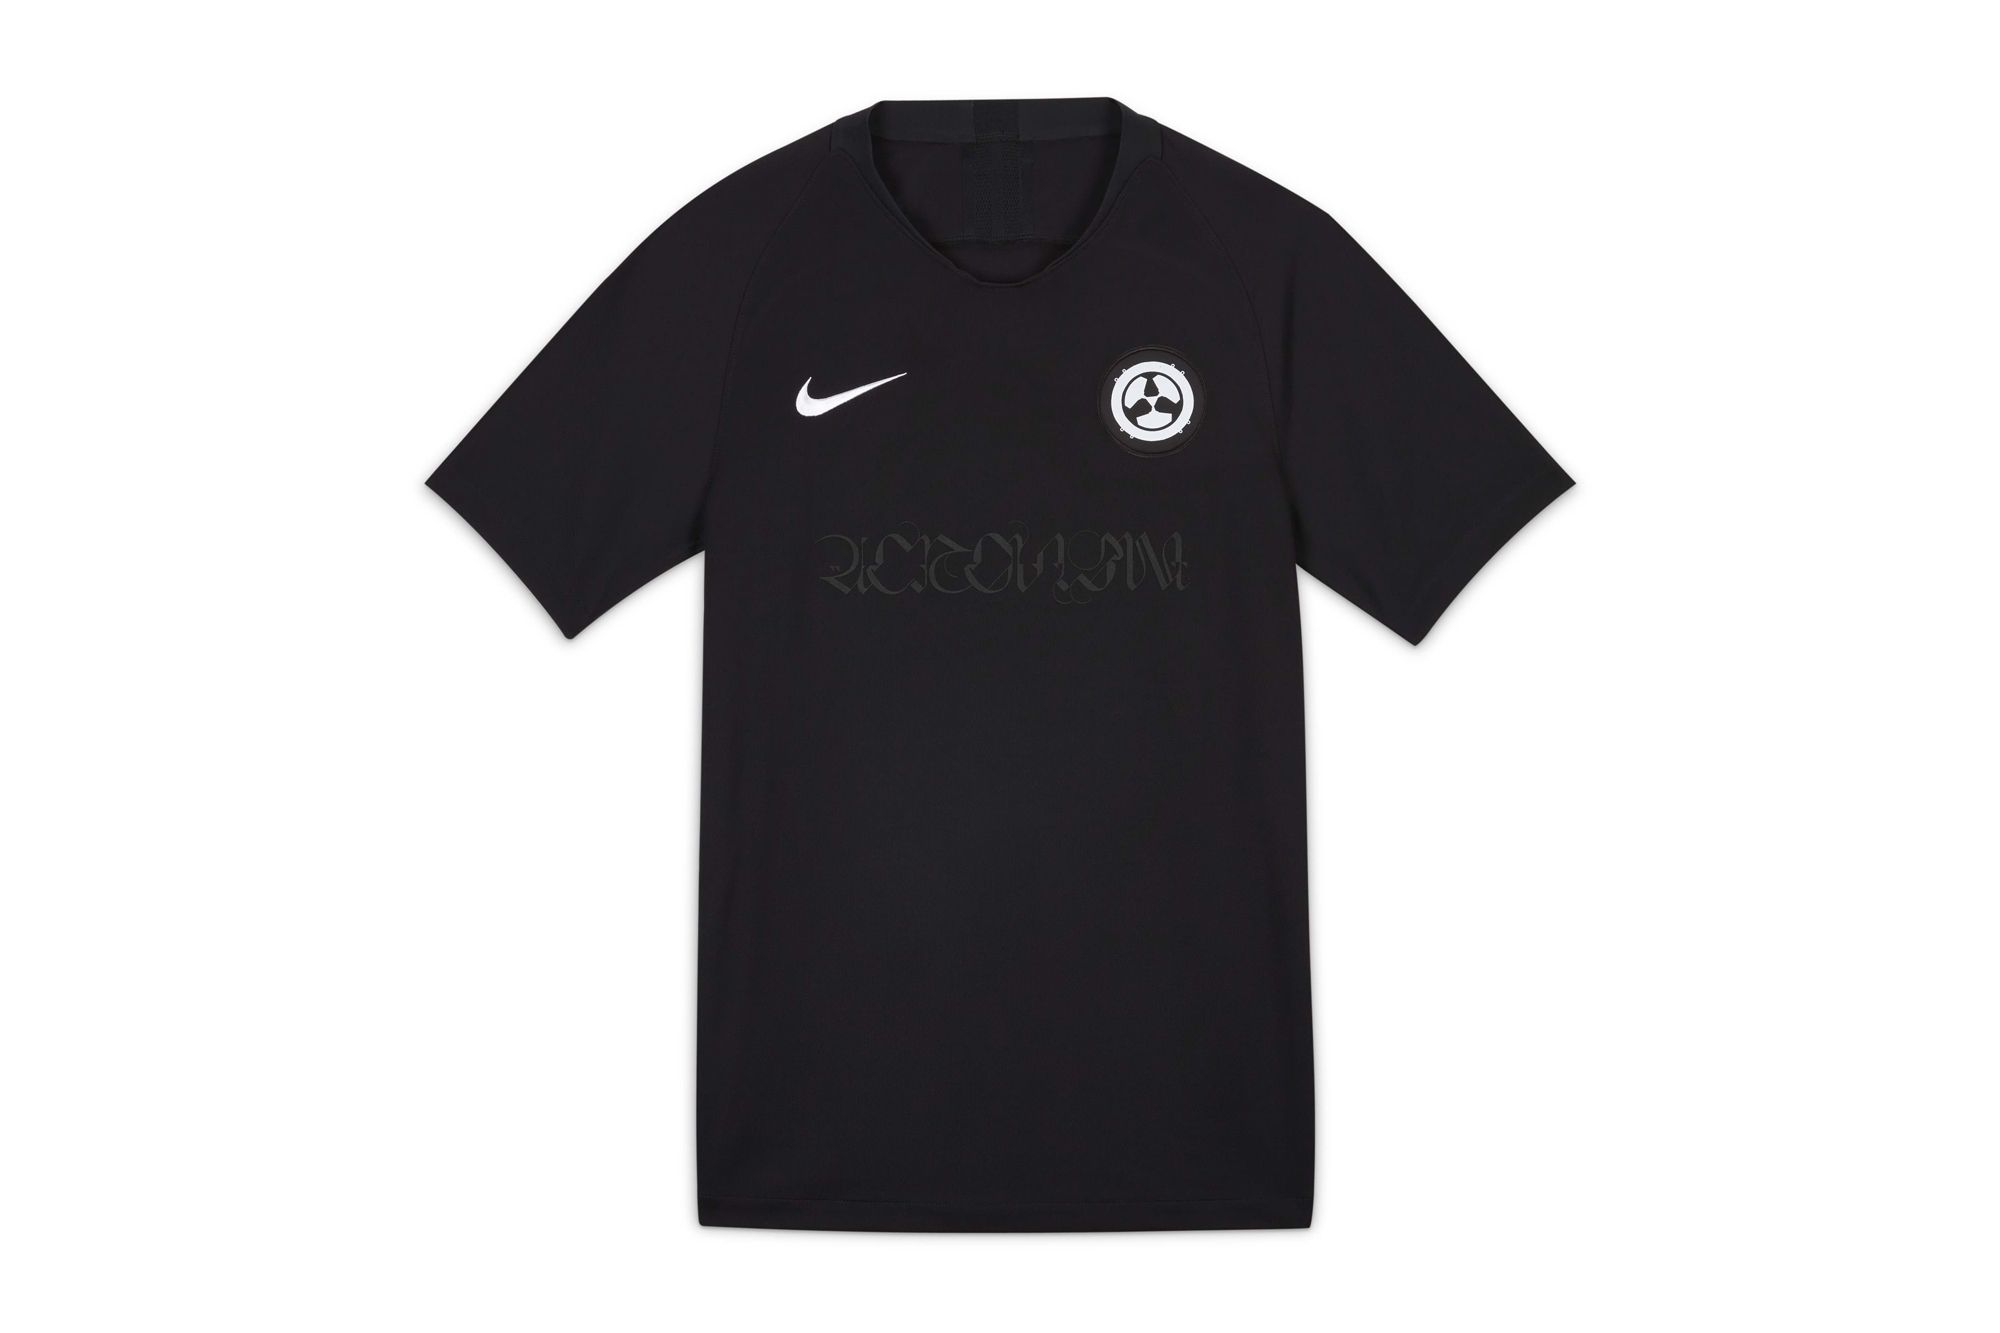 ACRONYM x Nike Soccer Jersey